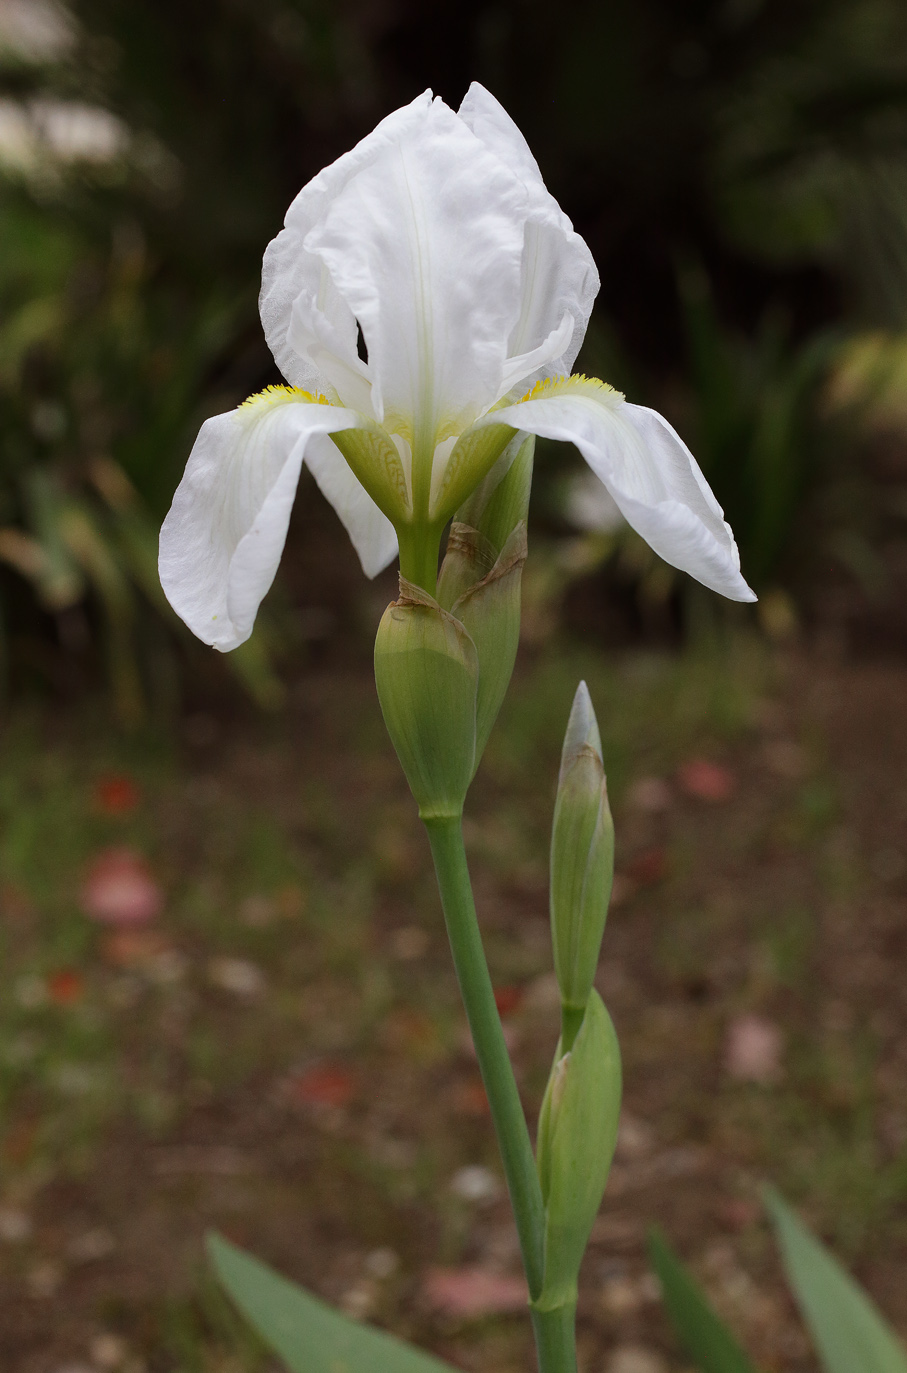 scapo fiorifero di Iris florentina L. con fiore aperto in apice